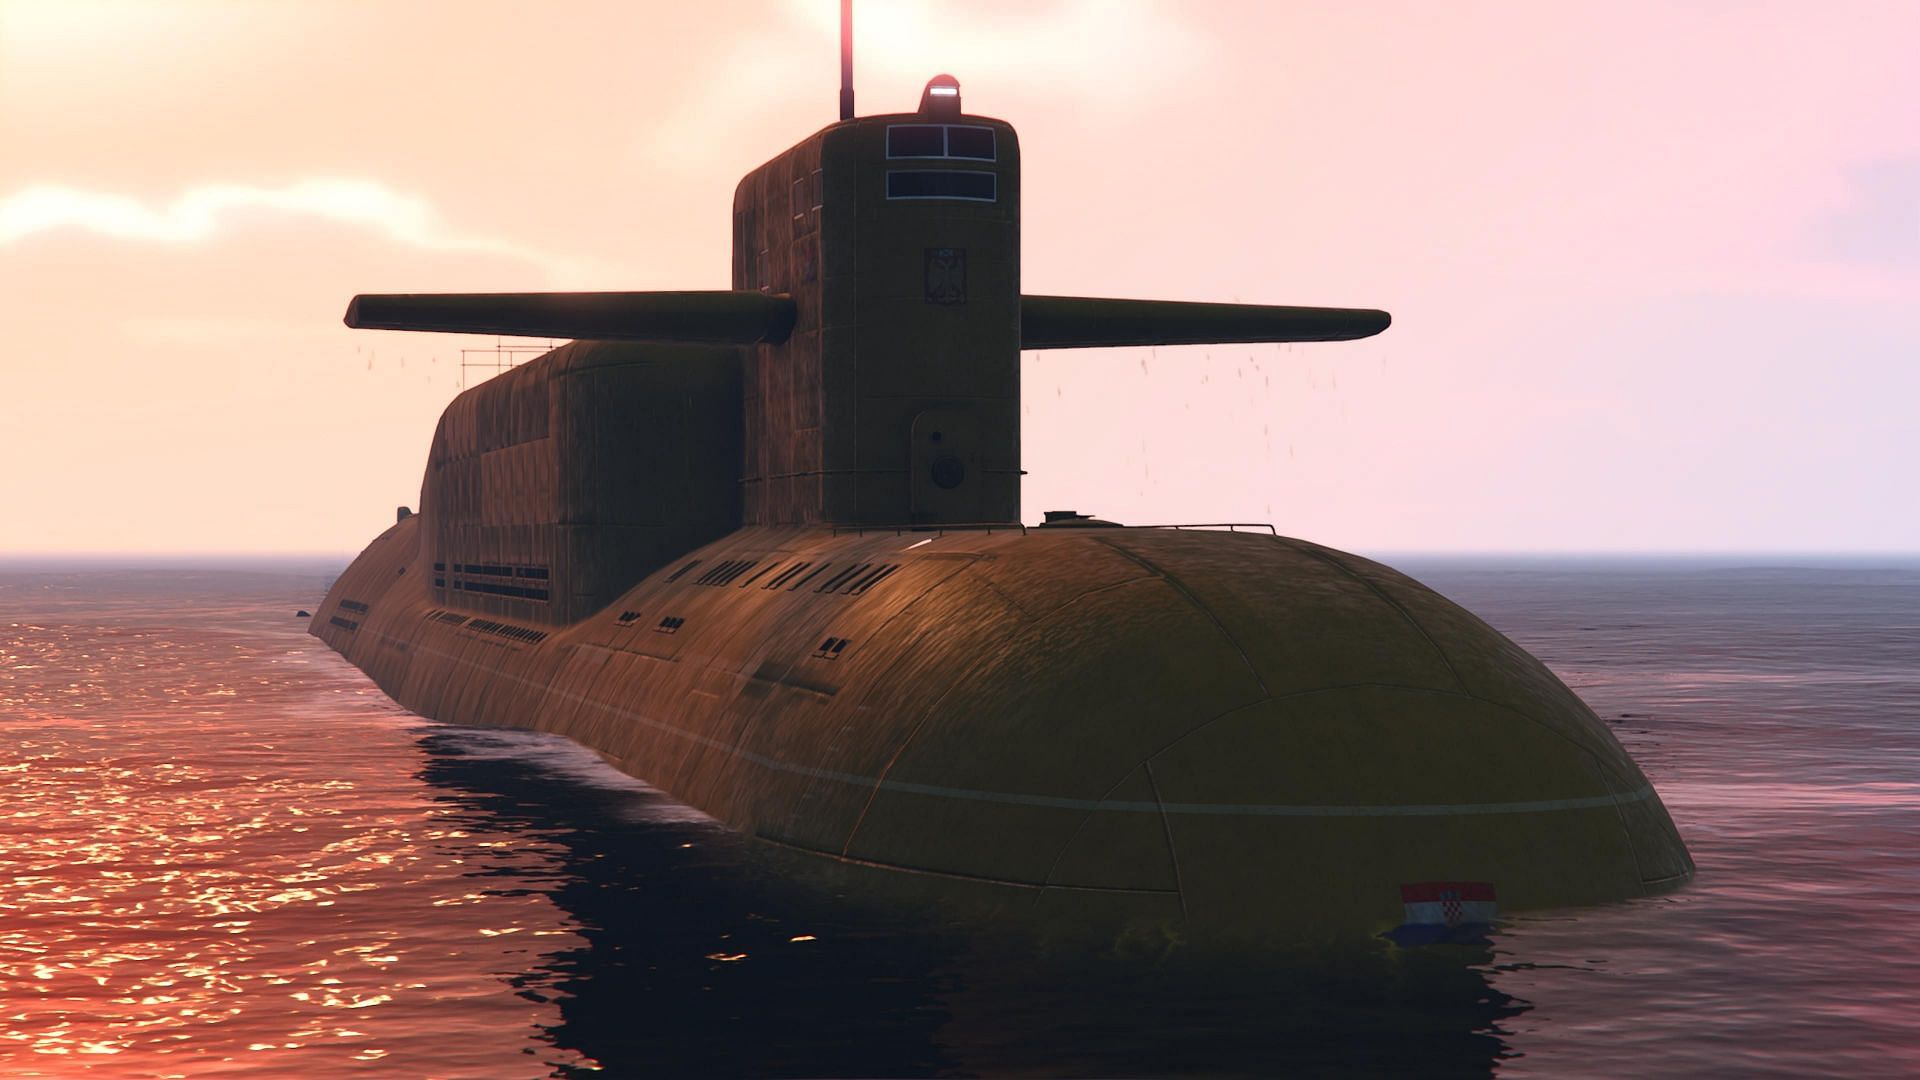 A Kosatka in open water (Image via Rockstar Games)